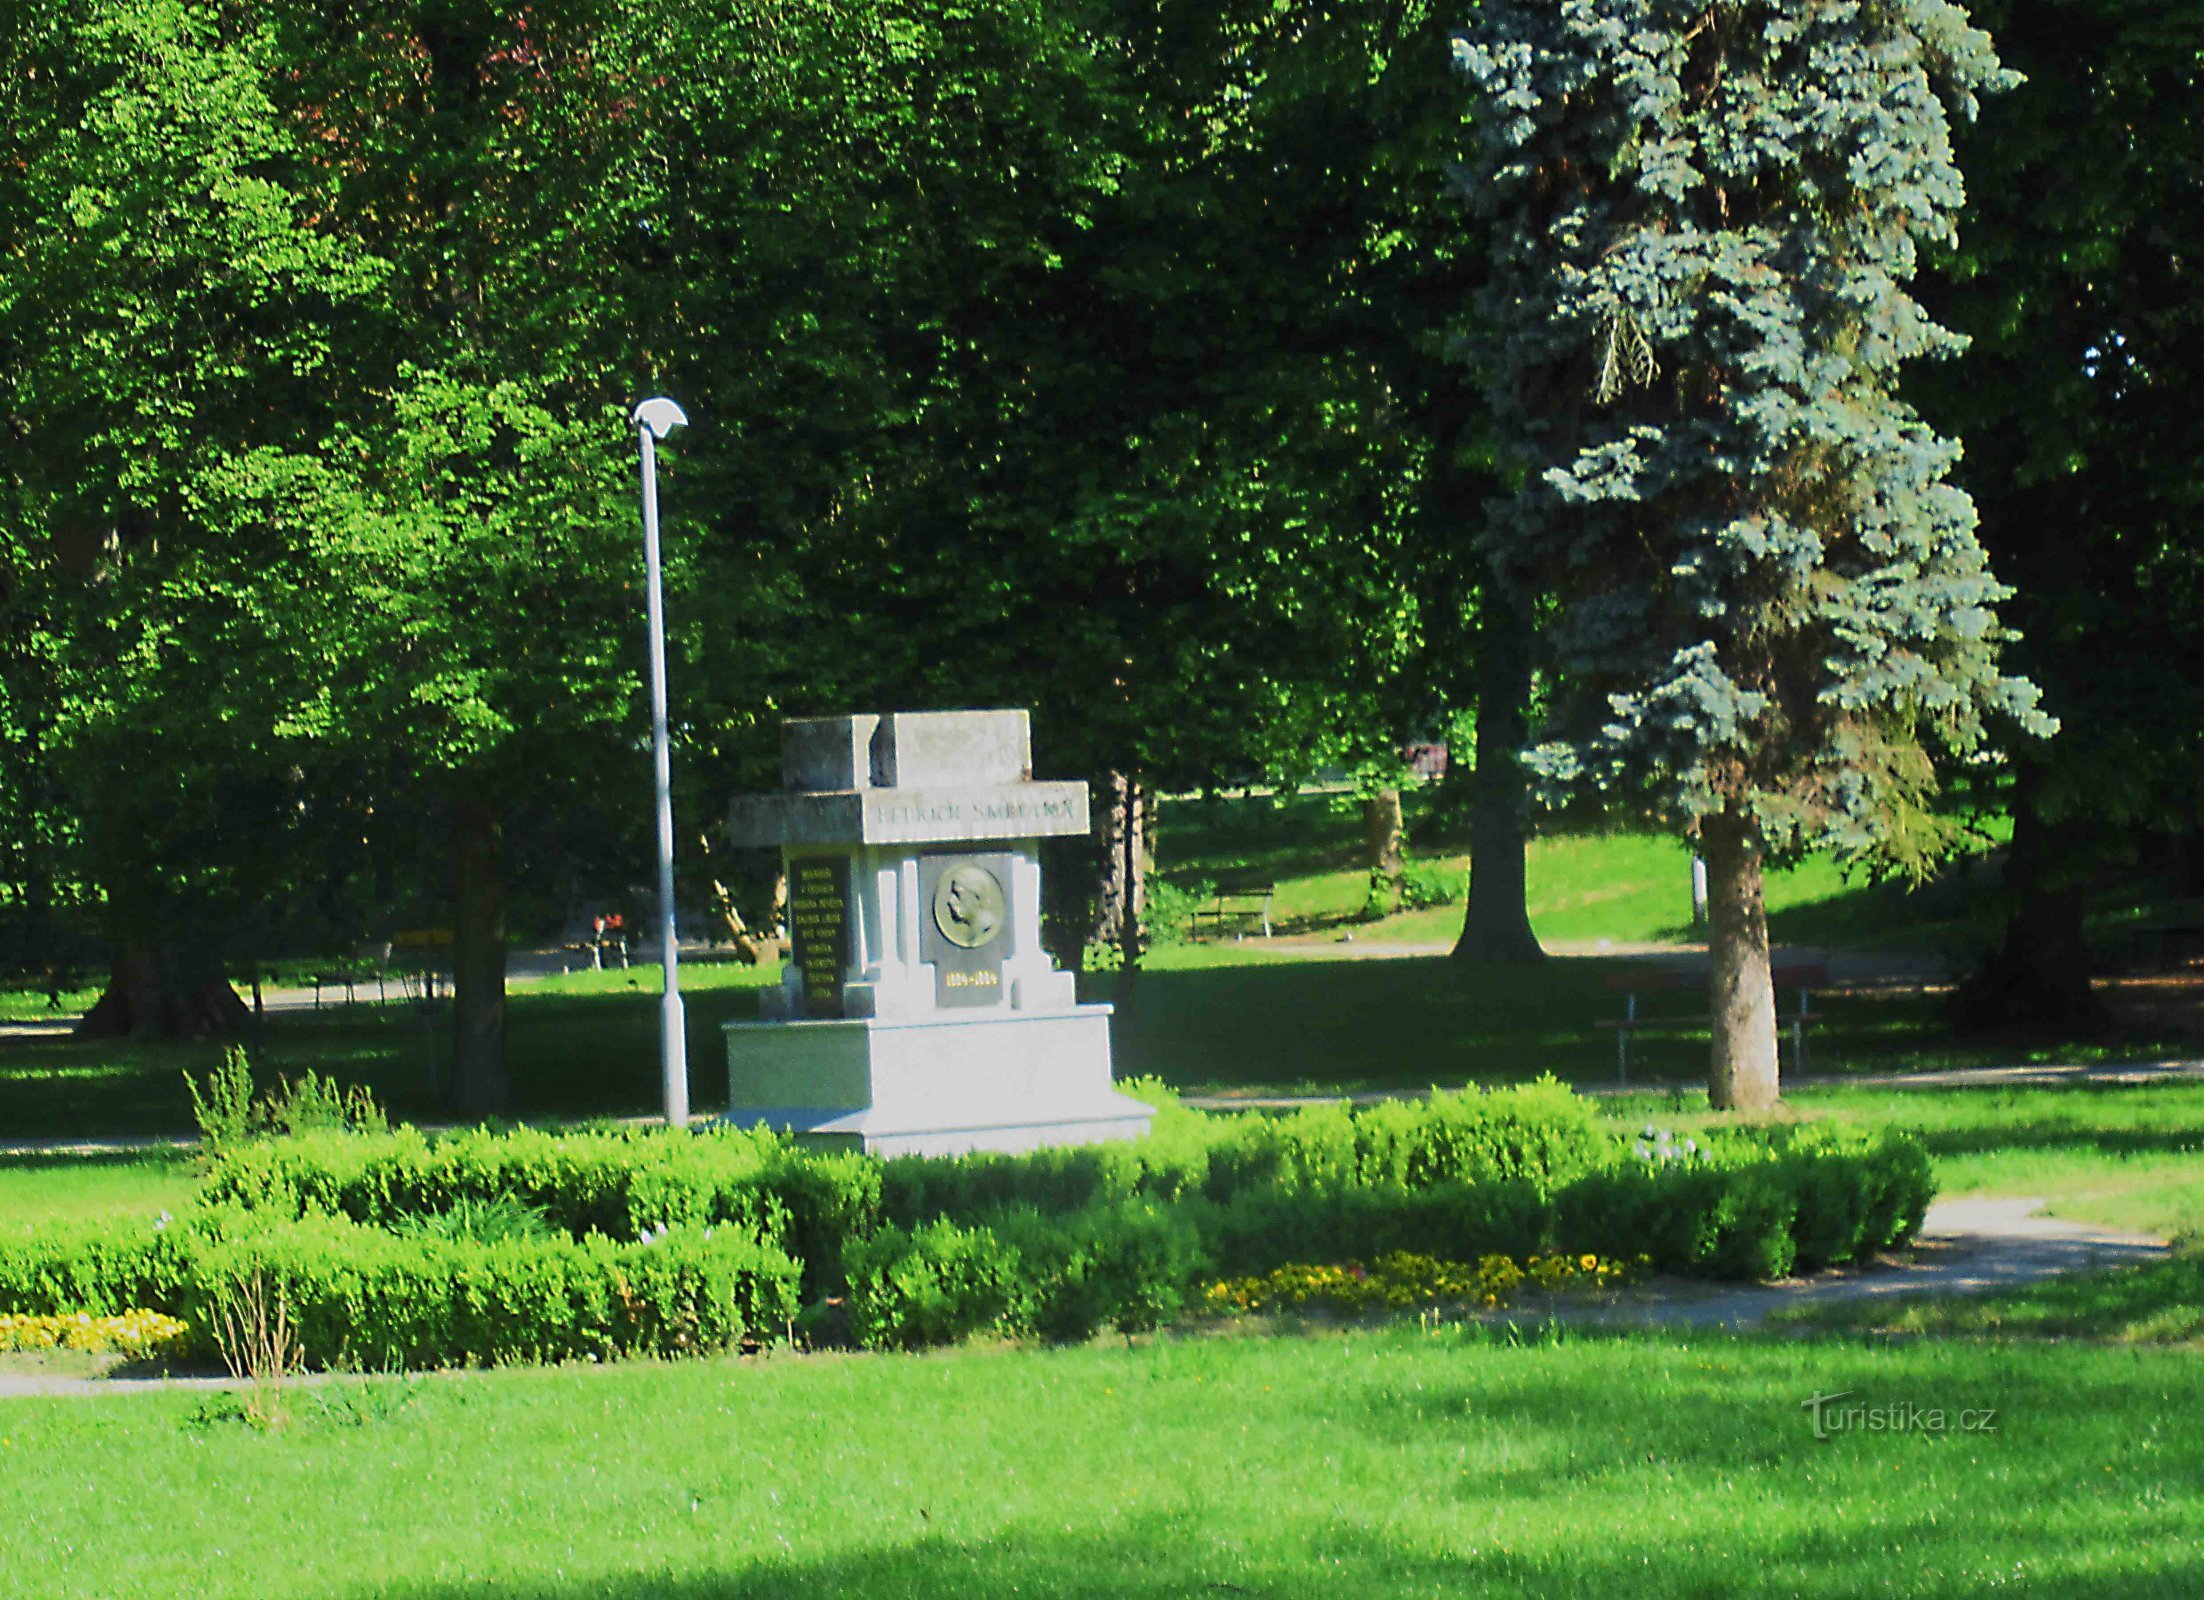 Bedřich-Smetana-Park in Vyškov